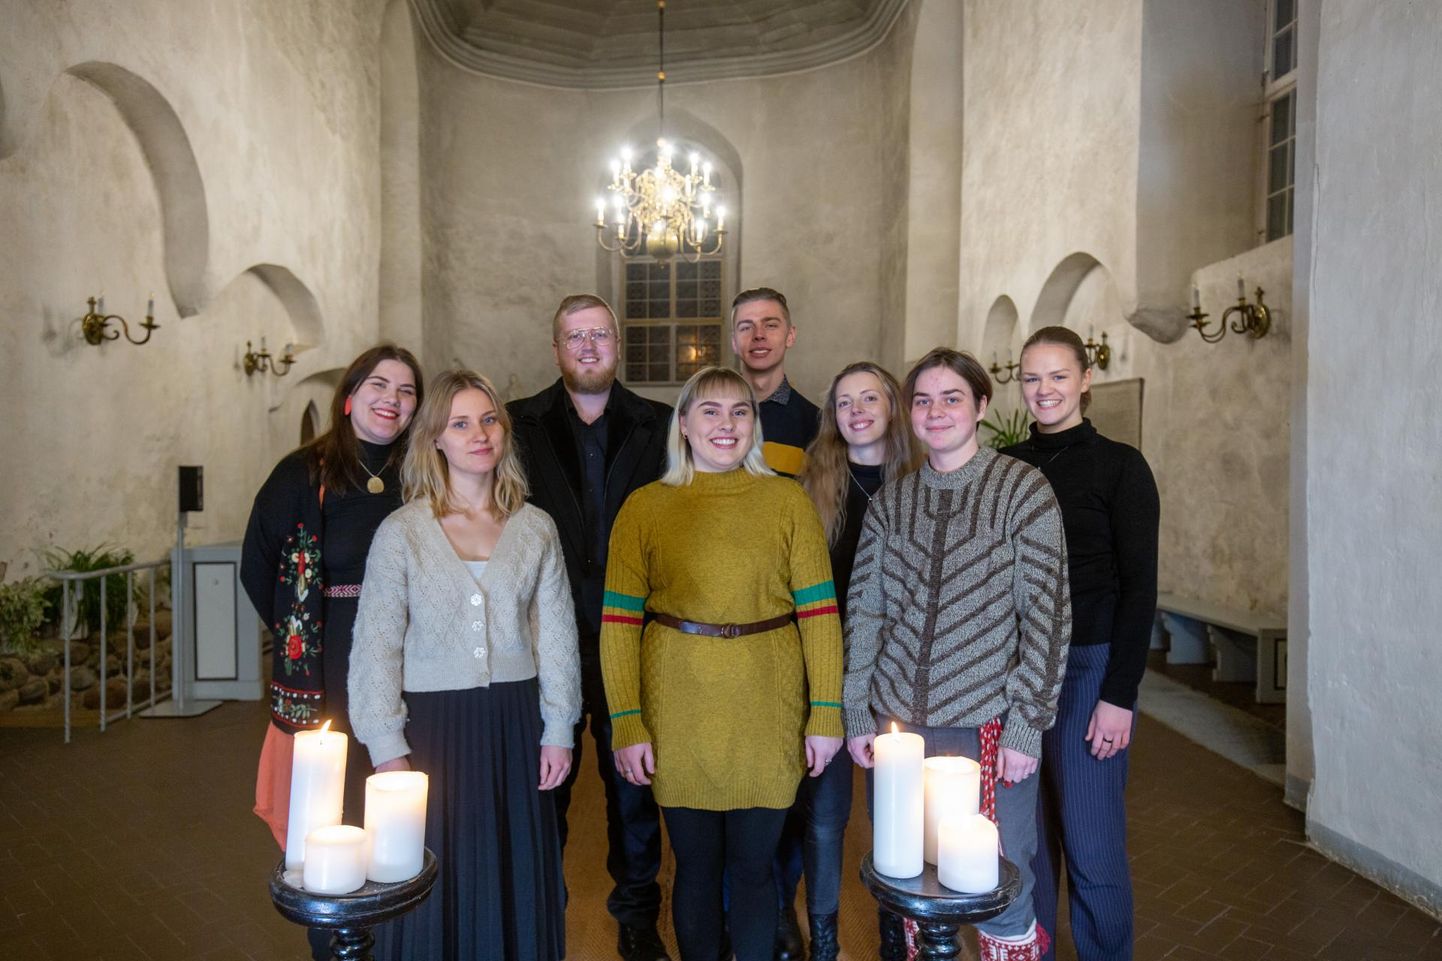 Viljandi kultuuriakadeemia pärimusmuusika eriala tudengid tulid kaheksakesi kokku, et laulda inimestele mõned regivärsilised jõululaulud.